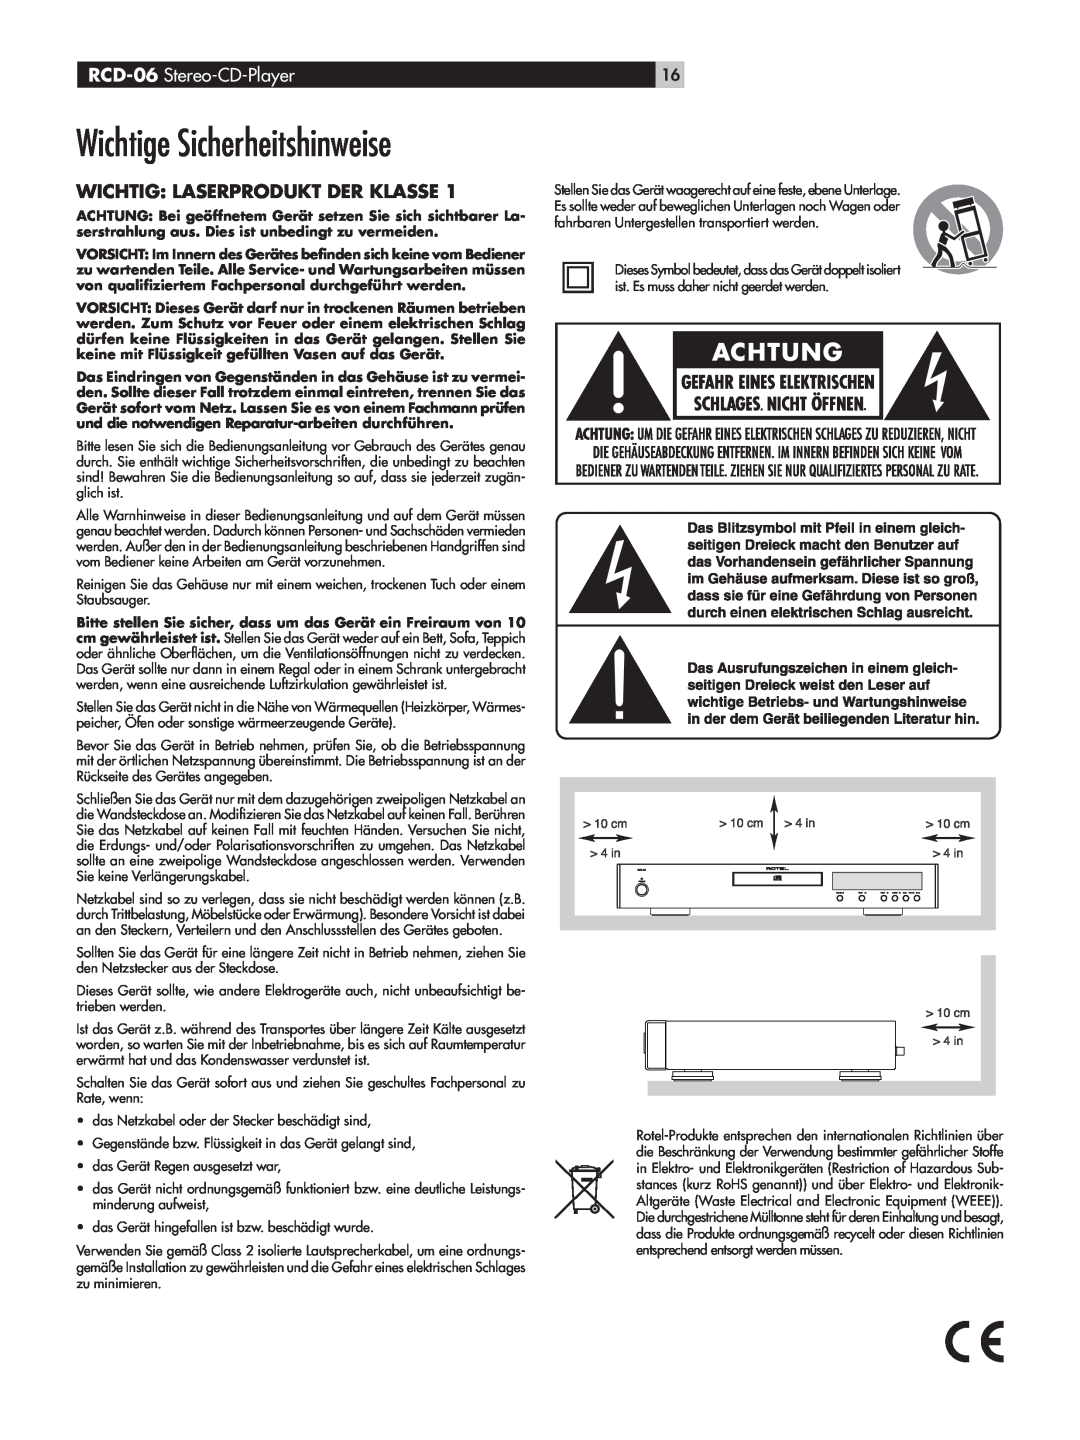 Rotel owner manual Wichtige Sicherheitshinweise, RCD-06 Stereo-CD-Player, Wichtig: Laserprodukt Der Klasse 